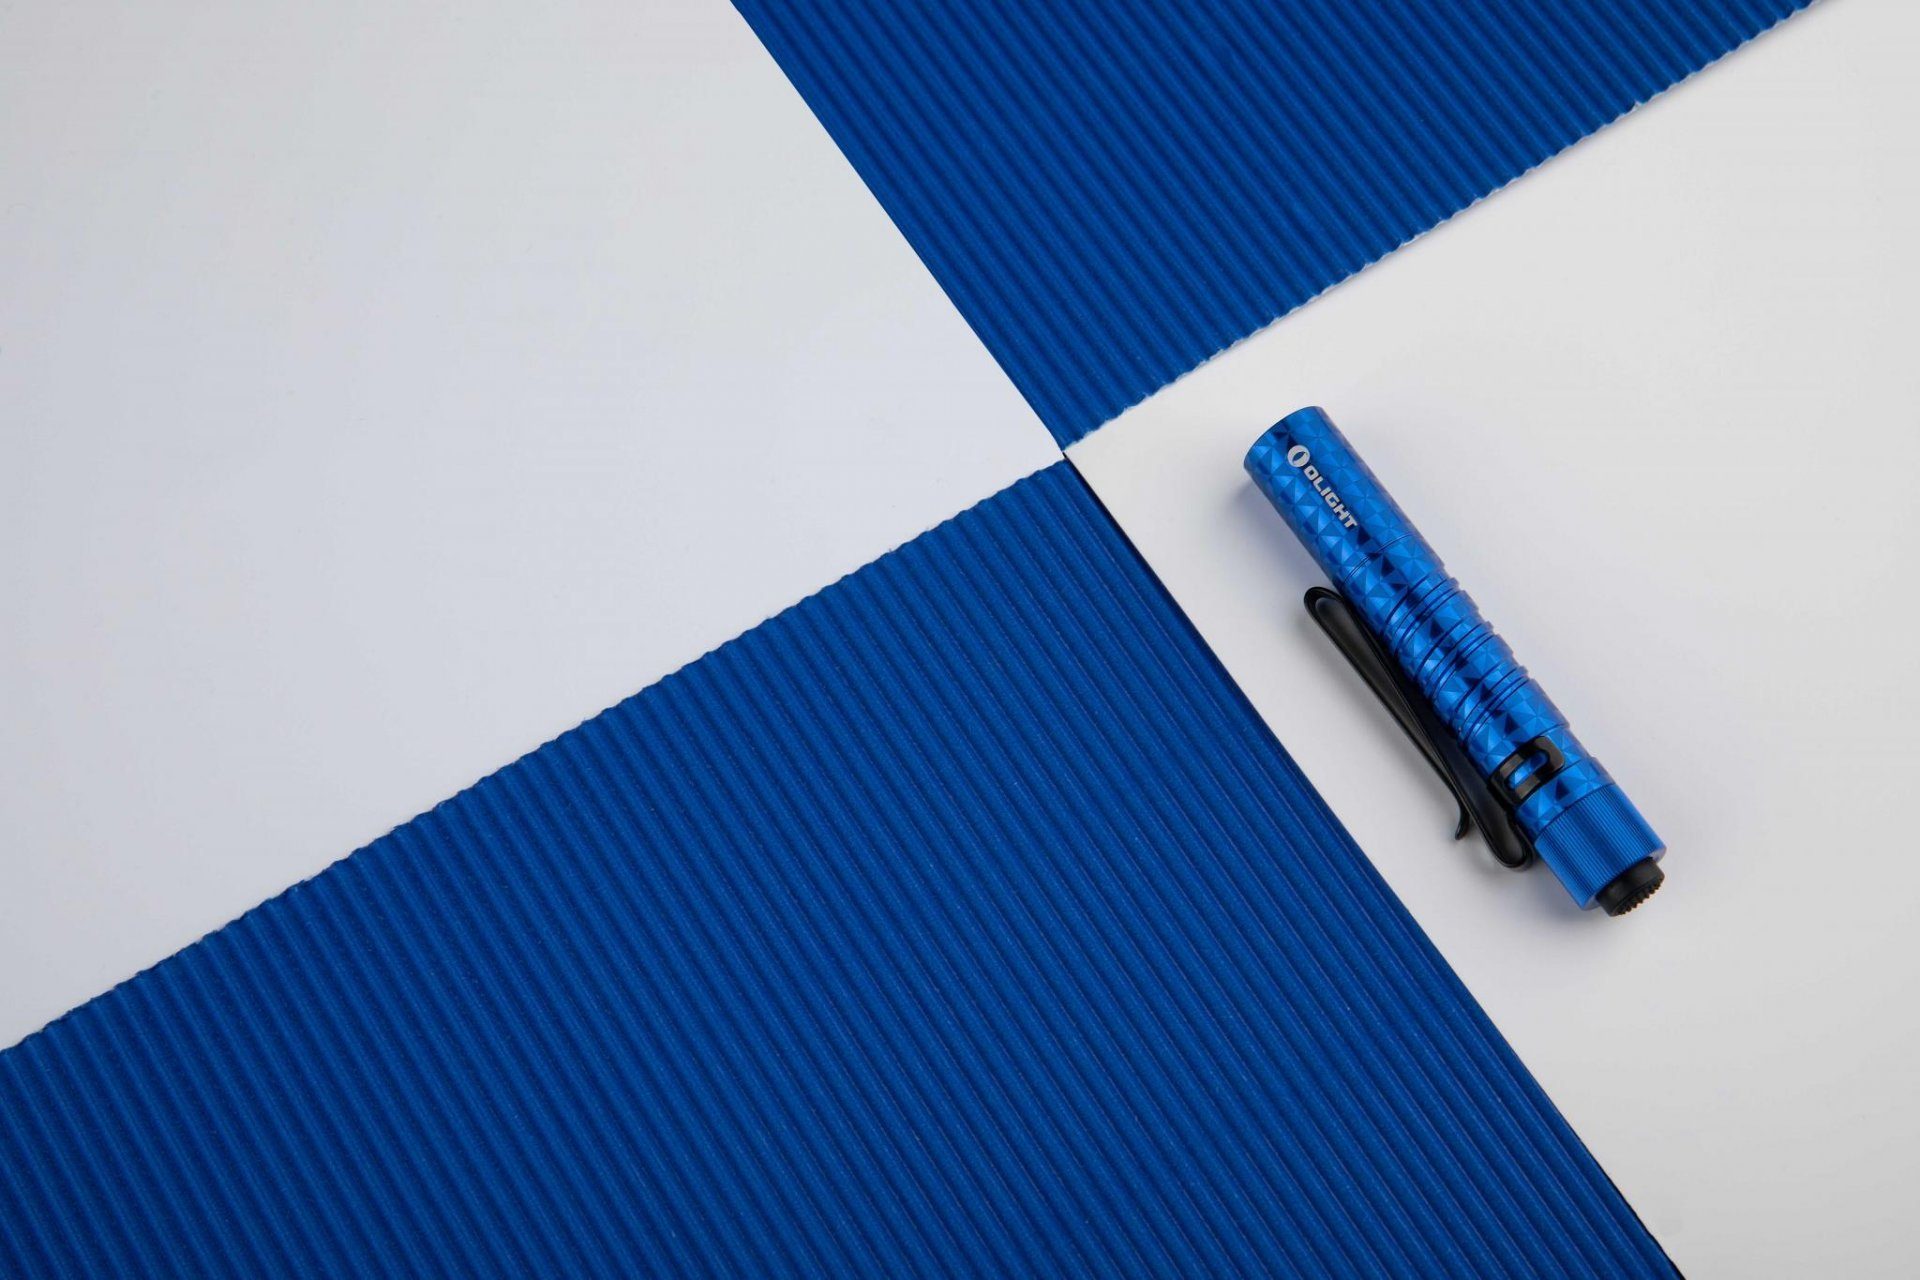 66m EOS I3T Blau Schlüsselbund Taschenlampe Pinwheel LED Reichweite OLIGHT Taschenlampe 180 Lumen Mini